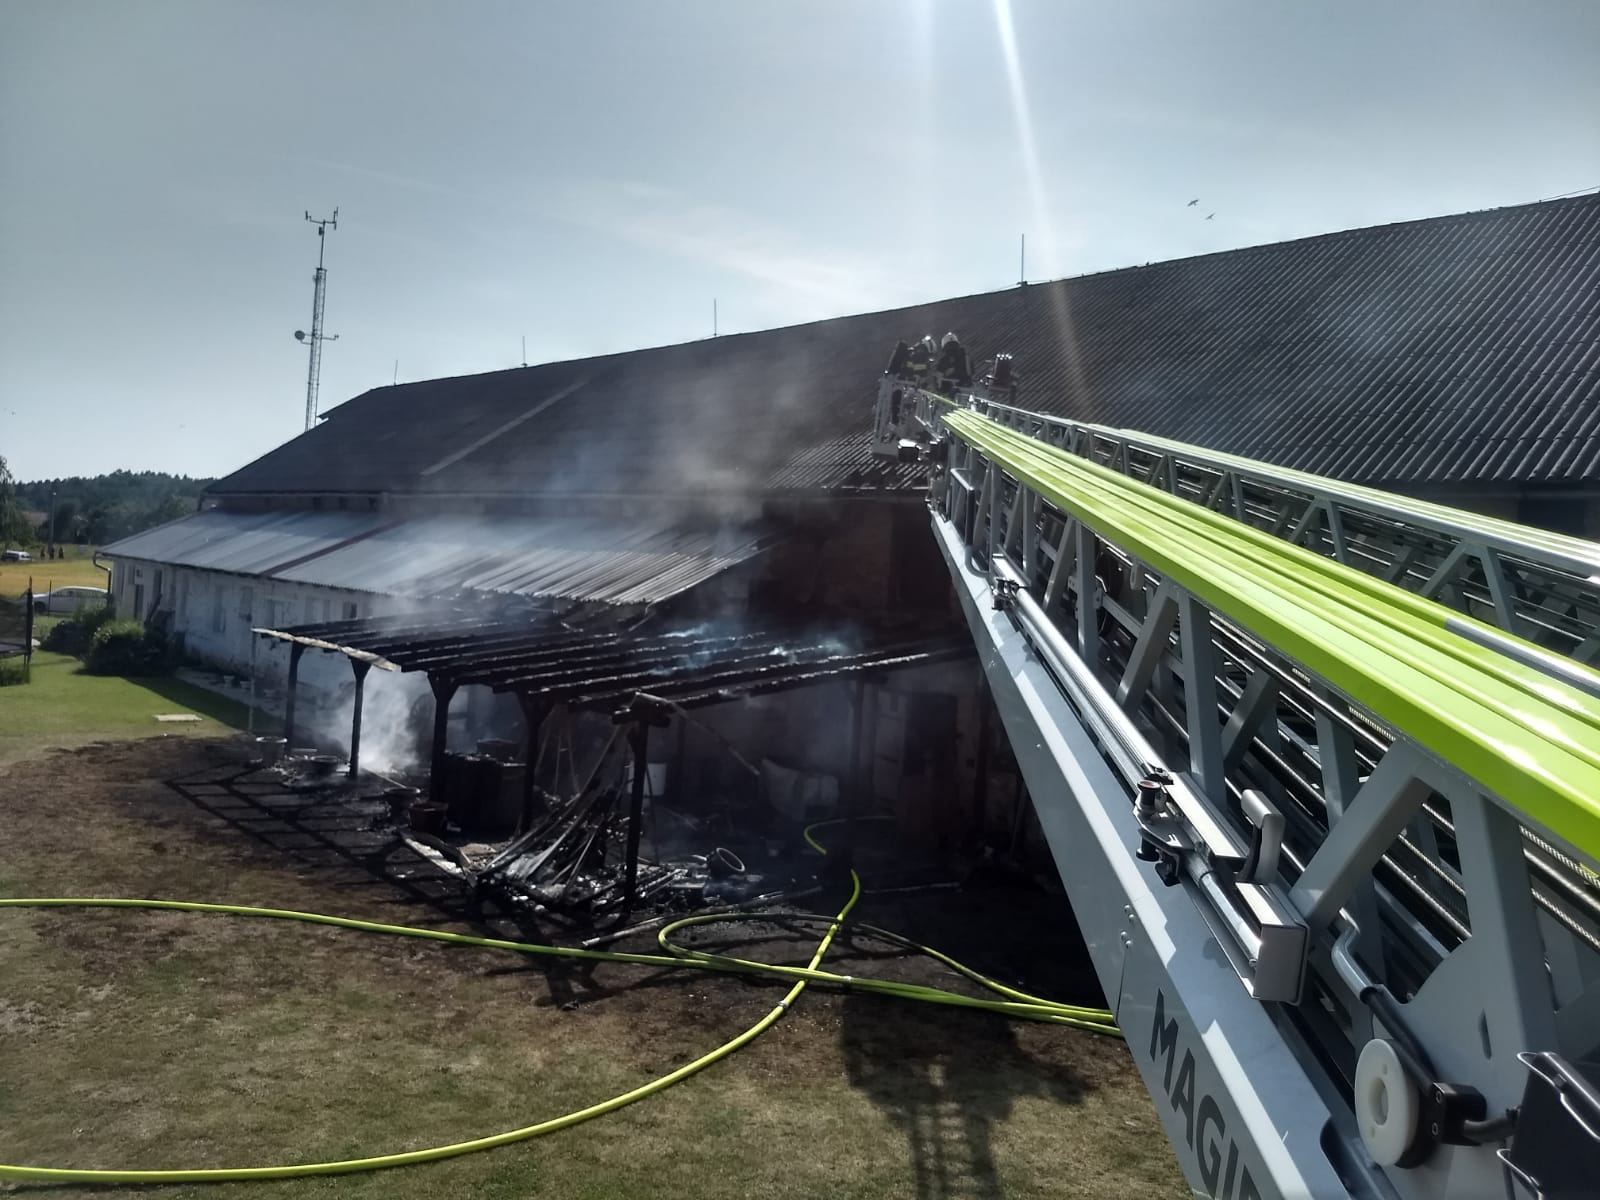 Sedm jednotek hasičů likvidovalo požár bývalého kravína v Nové Vsi na Rychnovsku